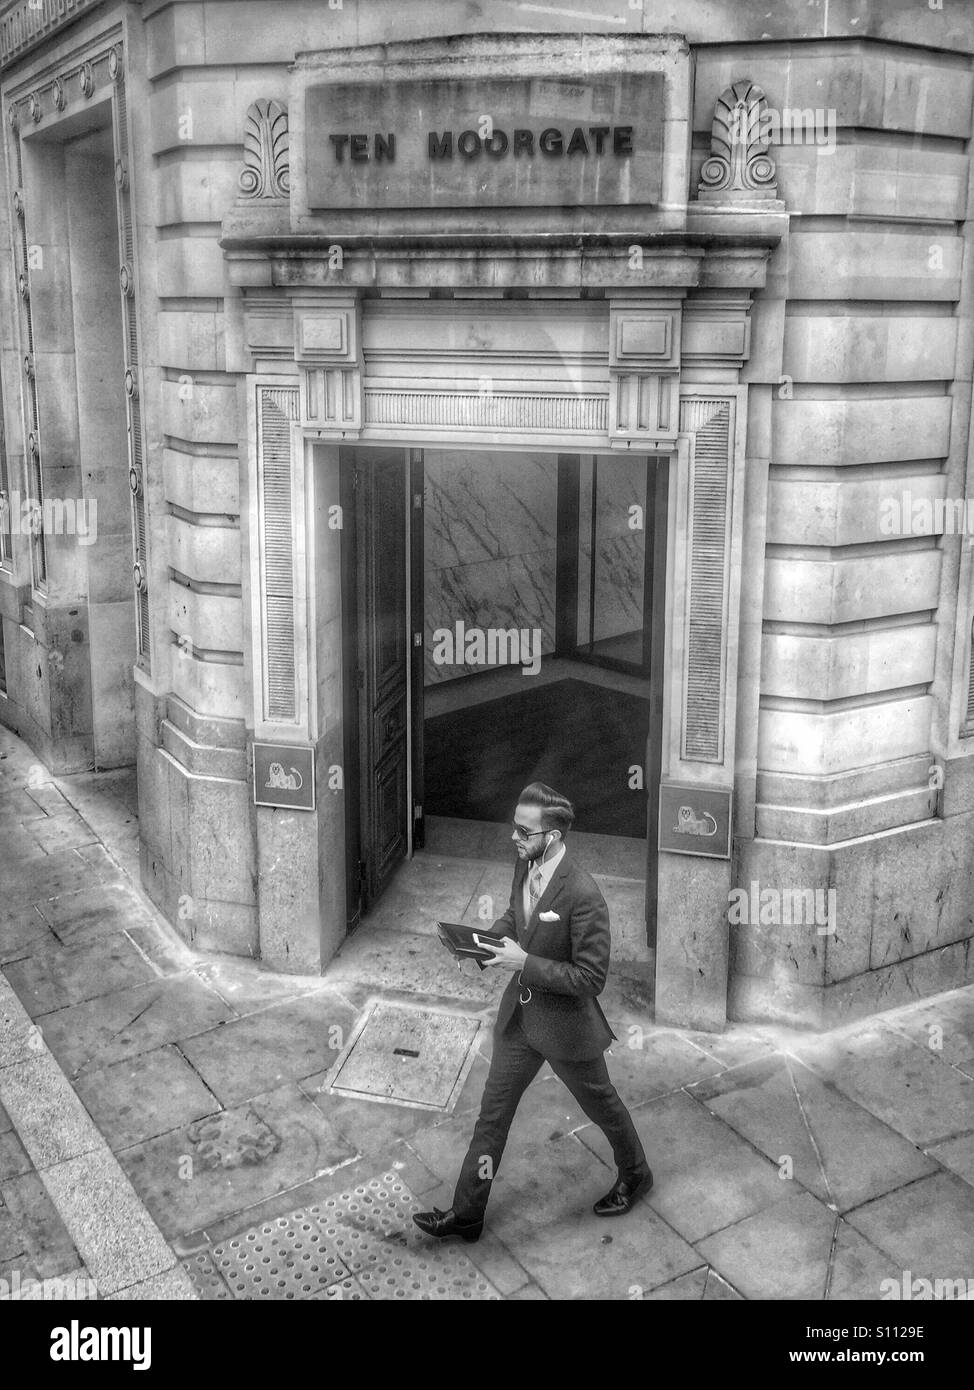 Homme en costume, marchant et parlant sur téléphone mobile. Moorgate. Londres, R.-U. Banque D'Images